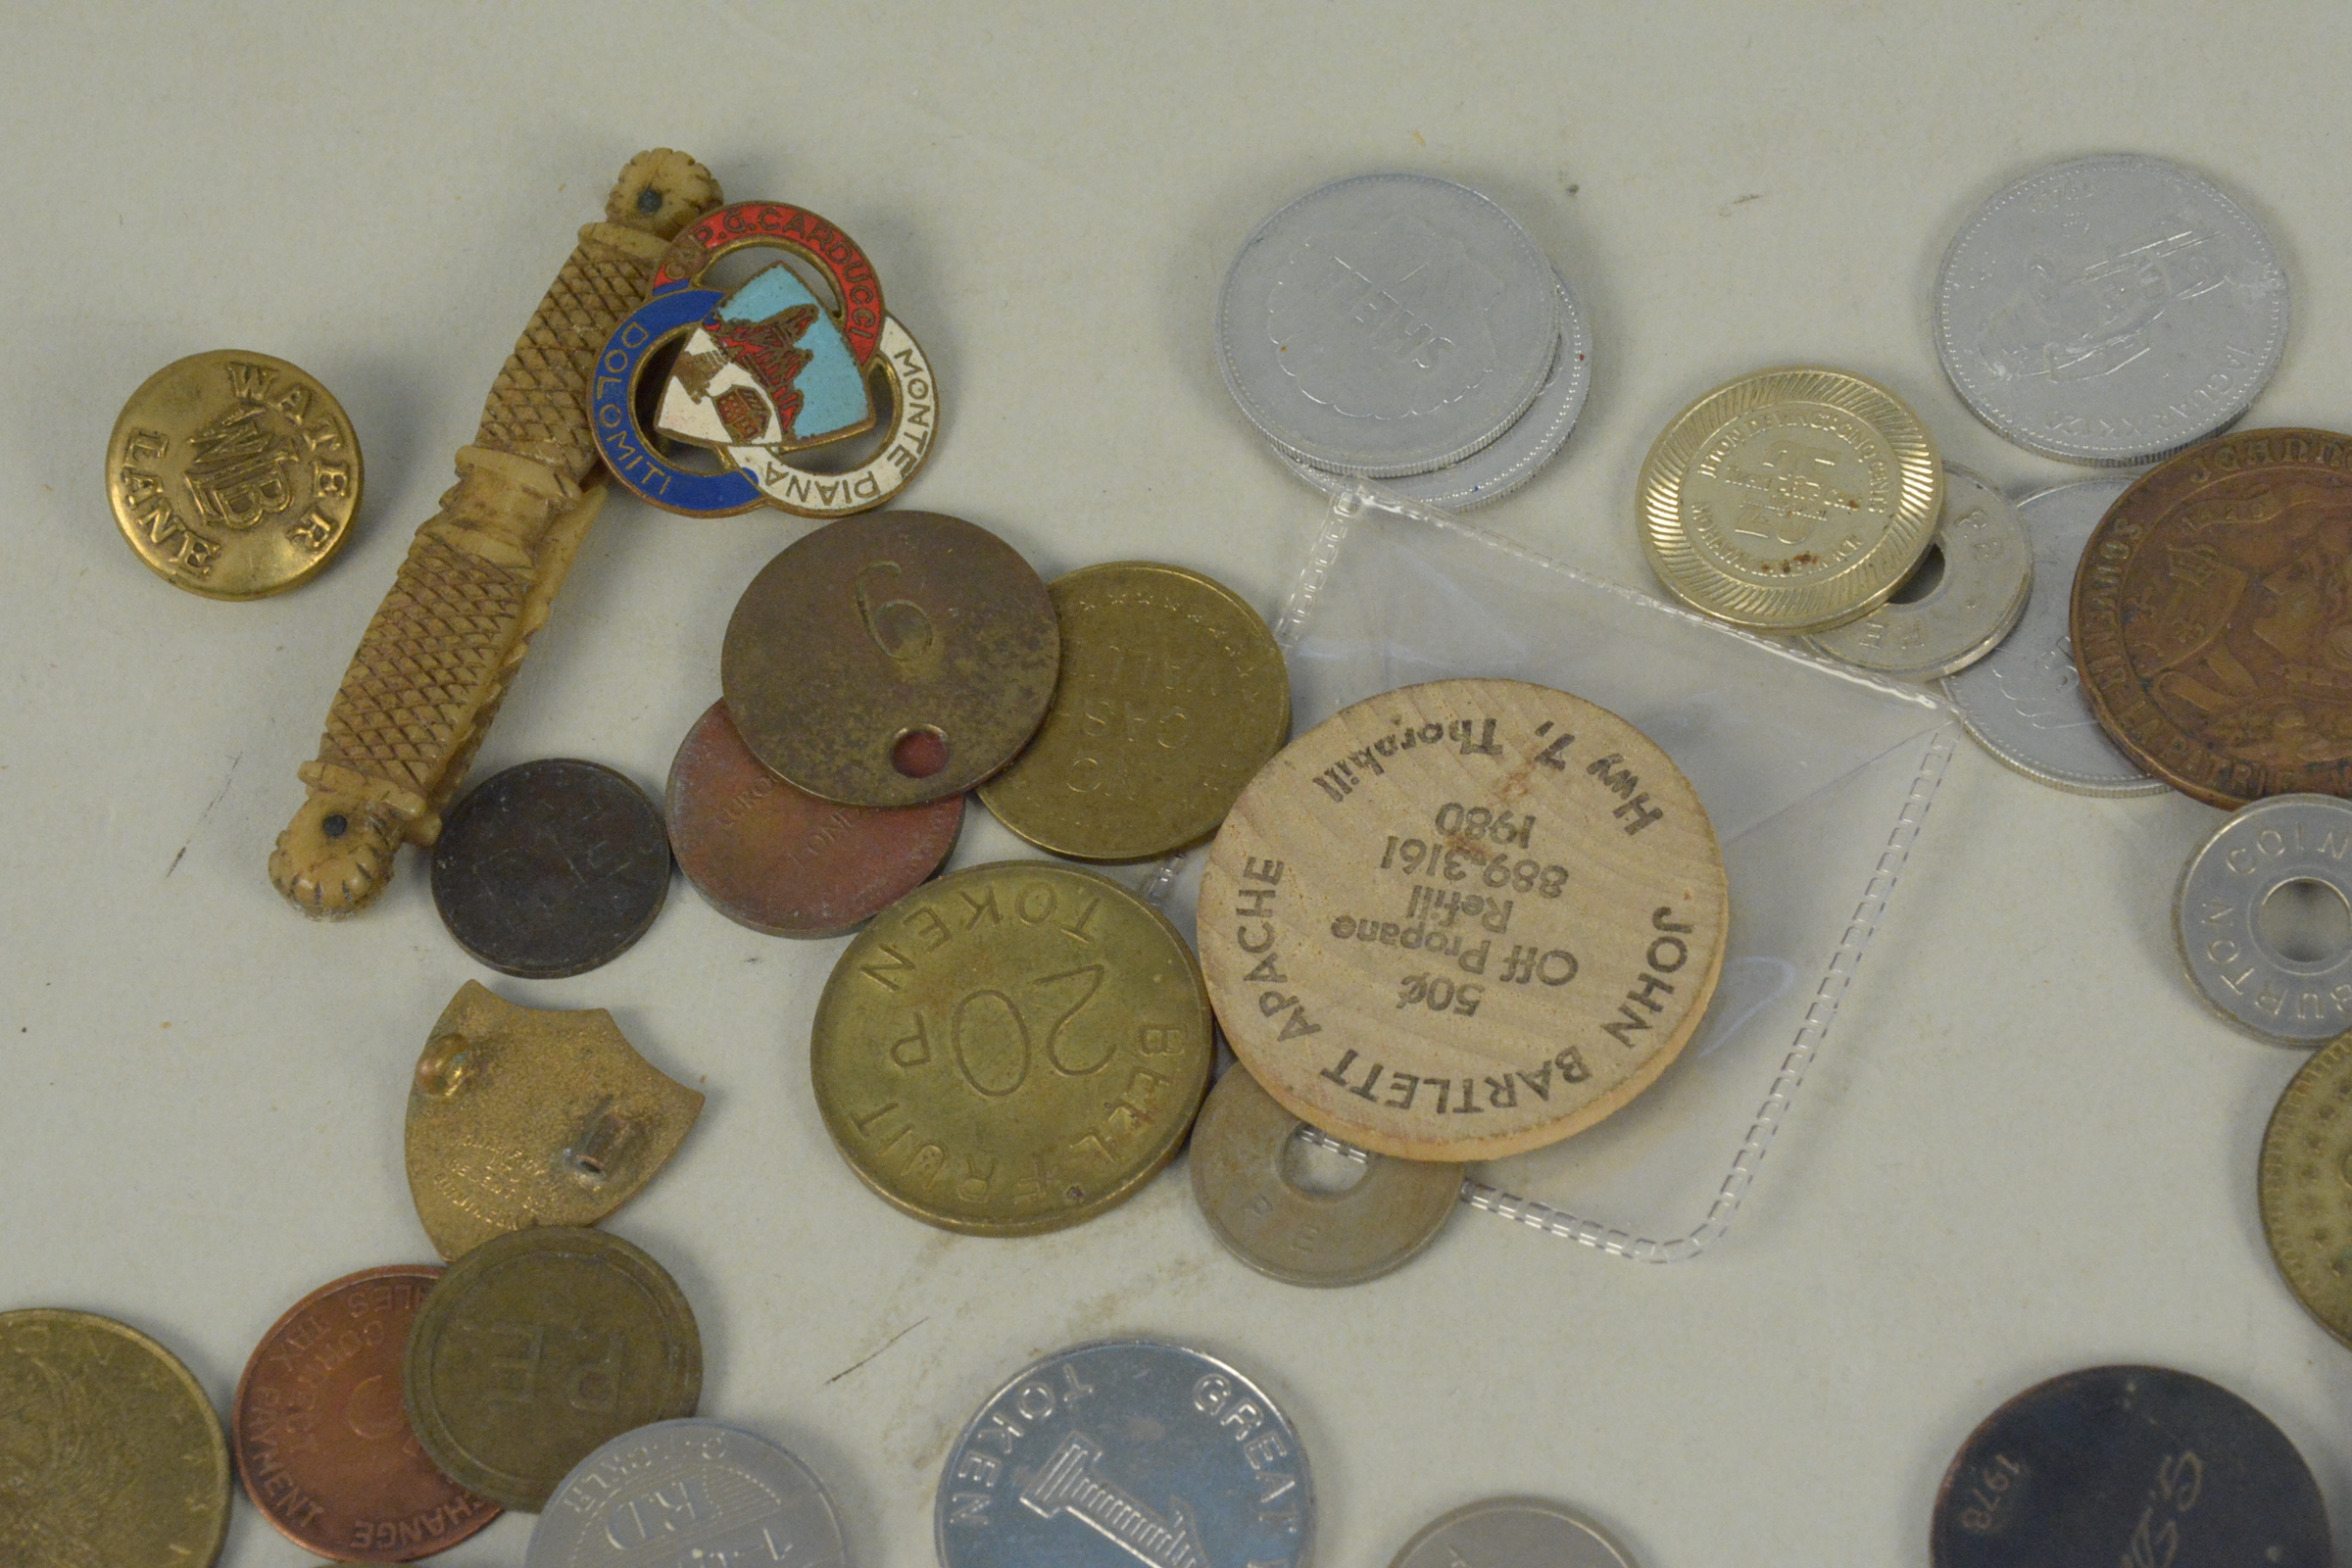 Various gaming and gambling tokens, life saving medallion, - Image 2 of 3